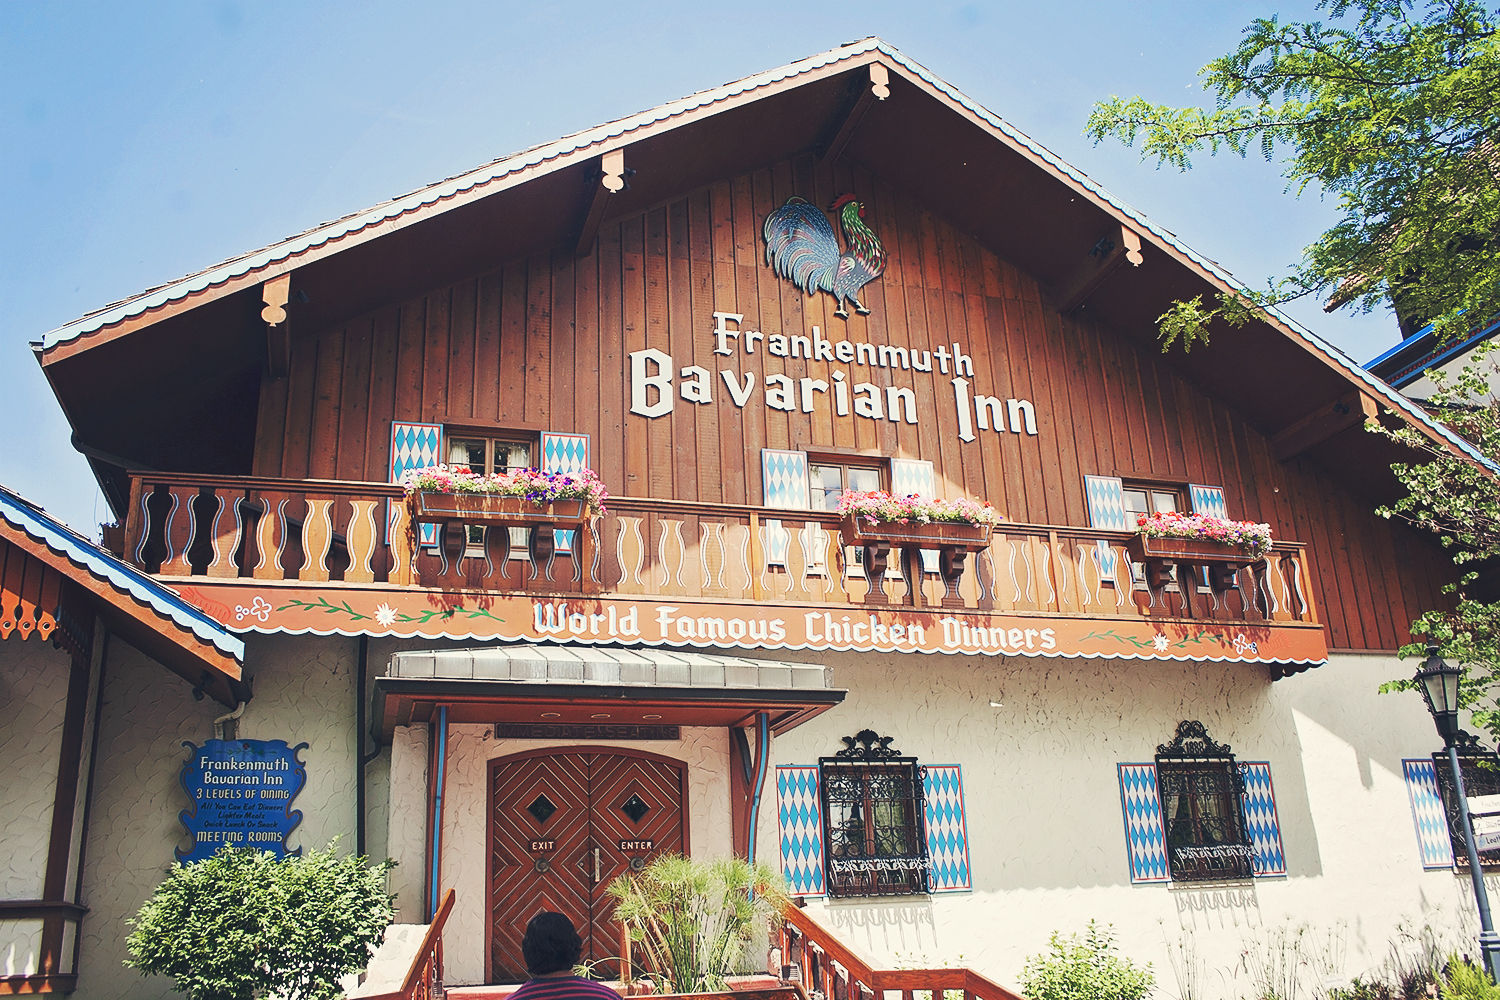 Bavarian Inn Grimm Fairytale Dining Room